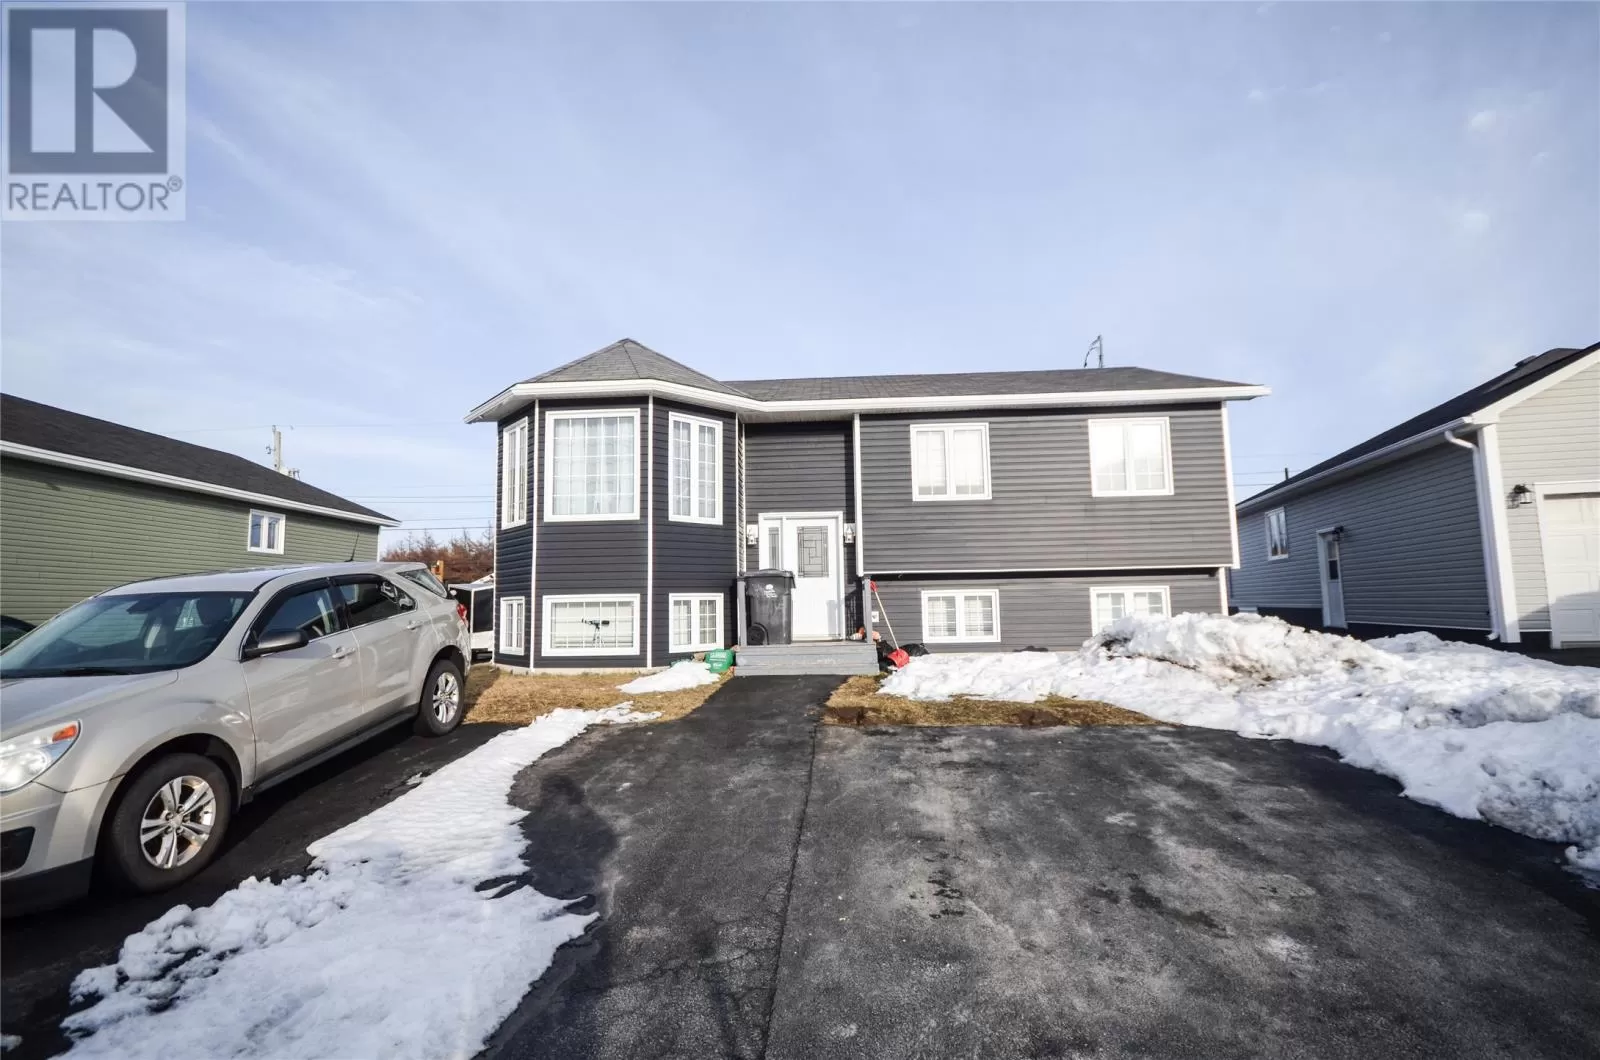 House for rent: 55 Joshwill Crescent, CBS, Newfoundland & Labrador a1x 7e2